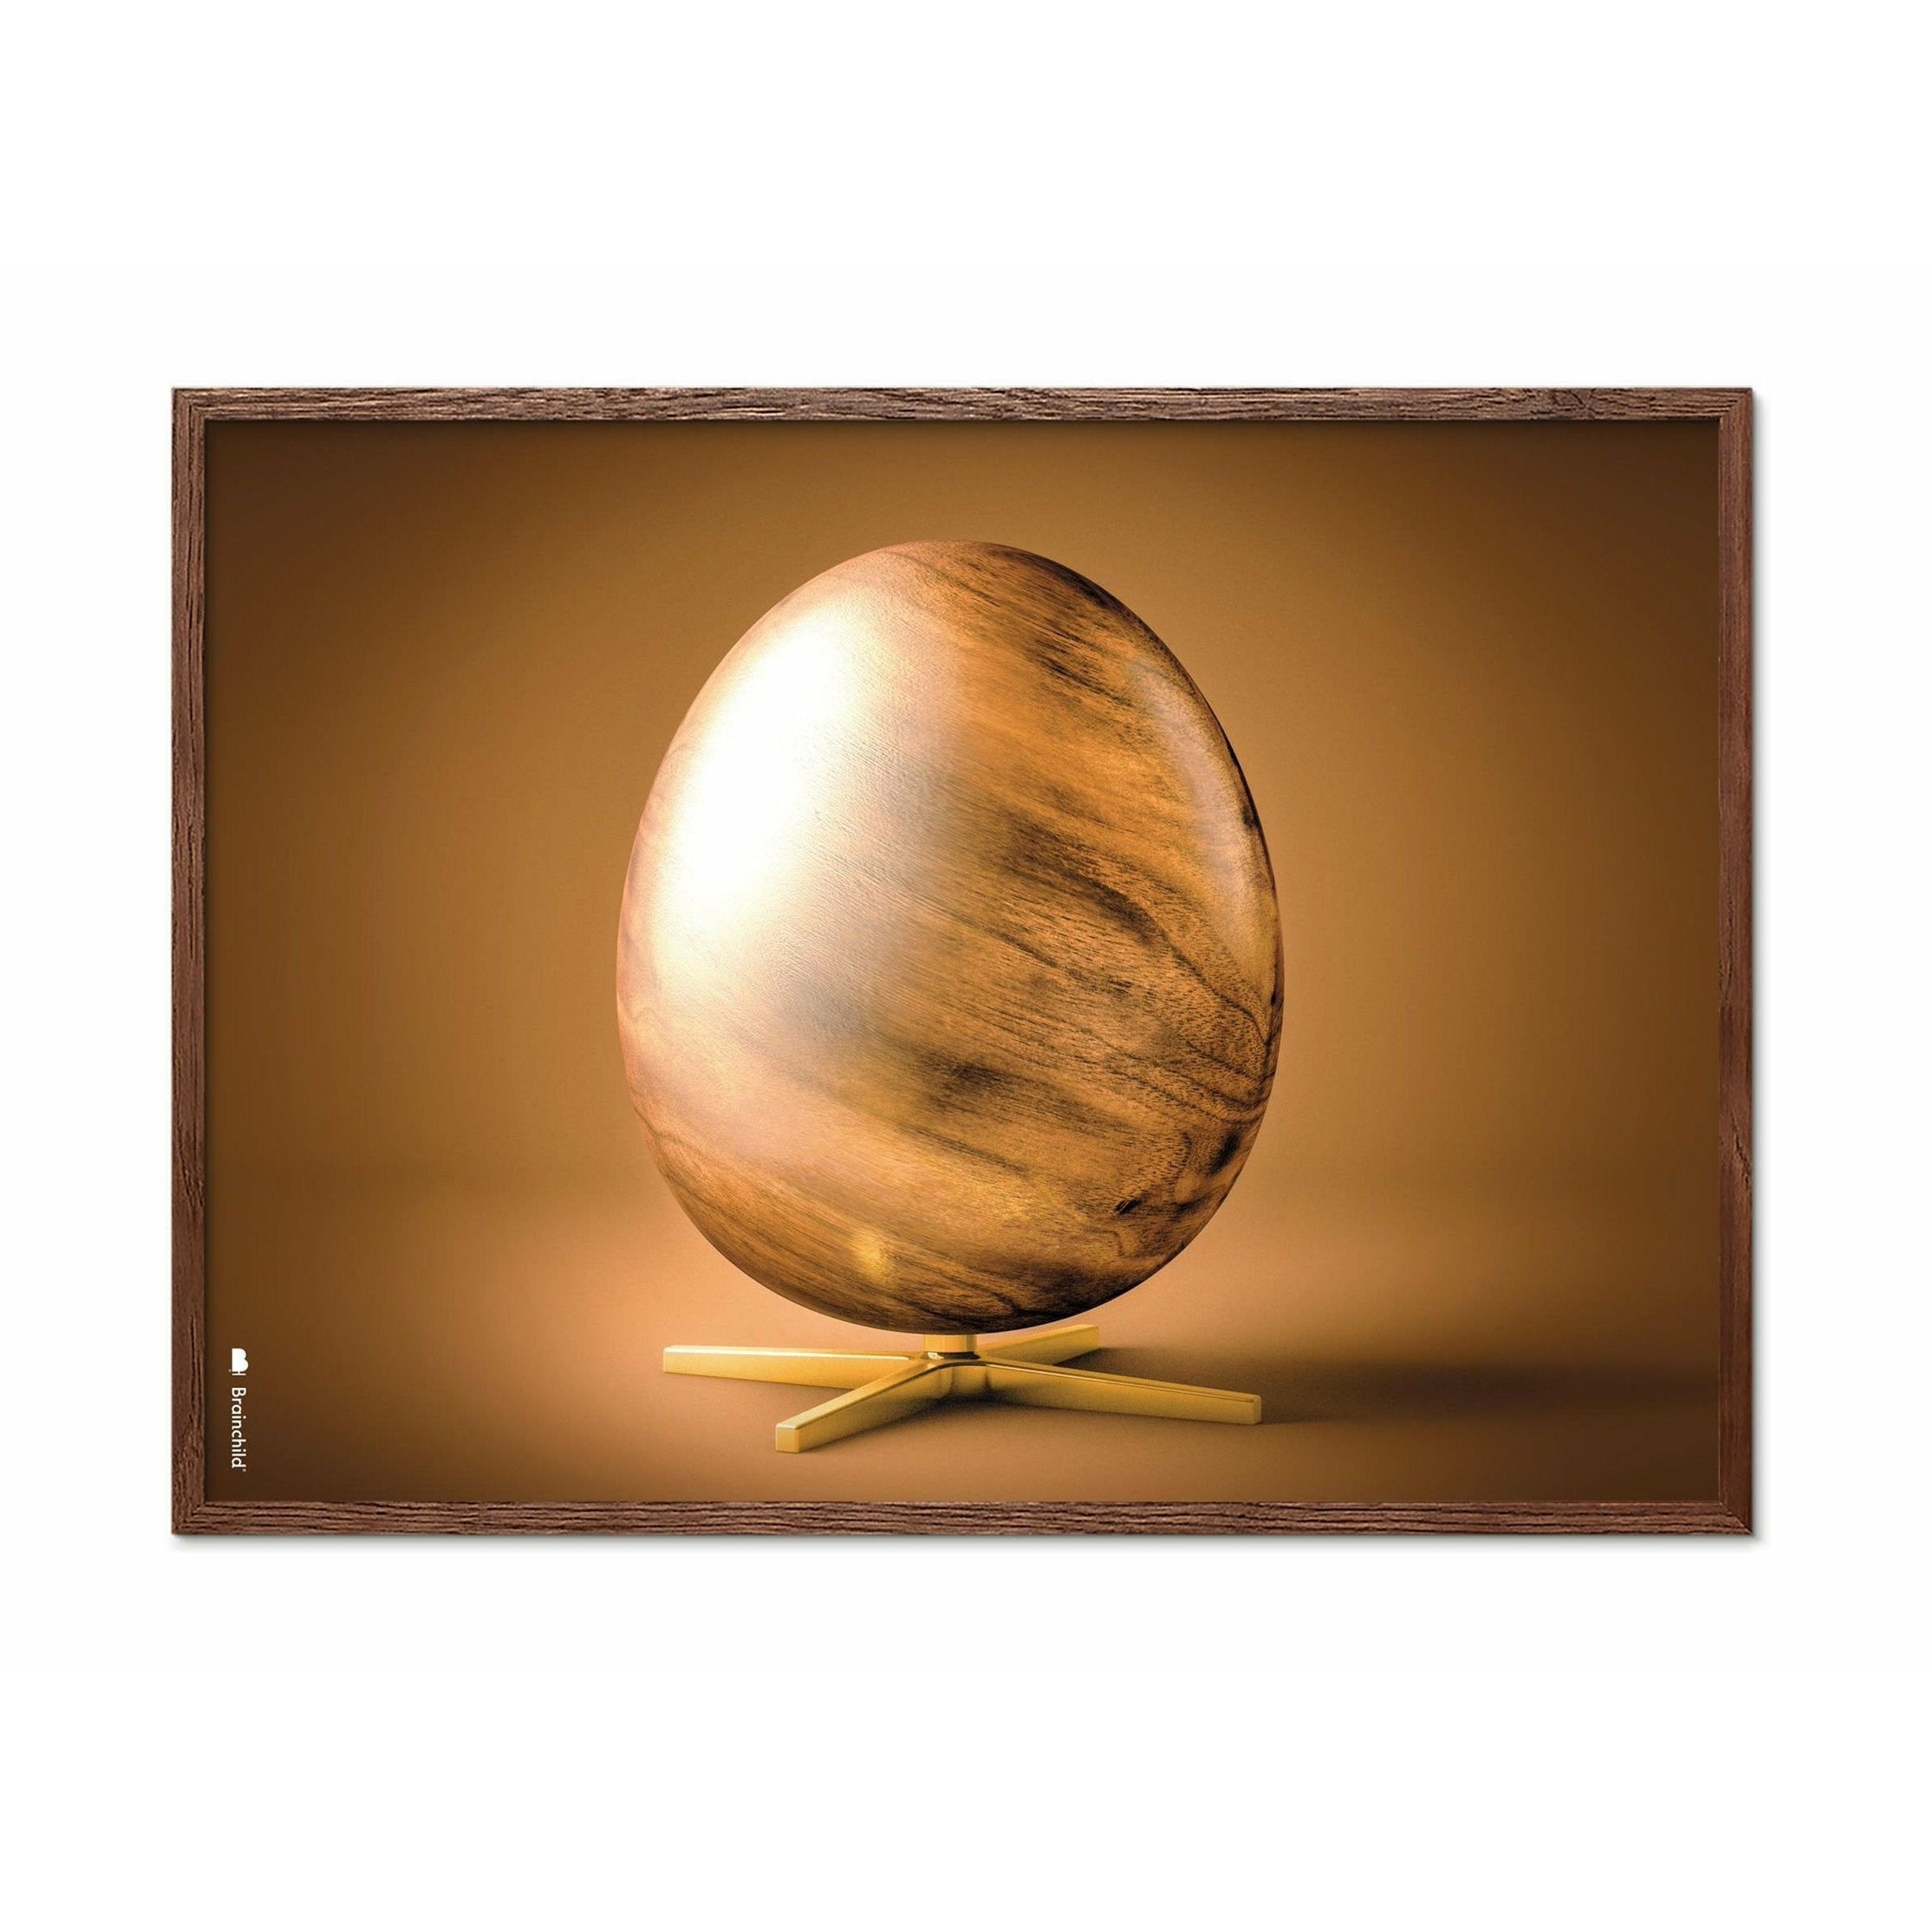 Brainchild Egg Cross Format Poster, Frame Made Of Dark Wood 30x40 Cm, Brown